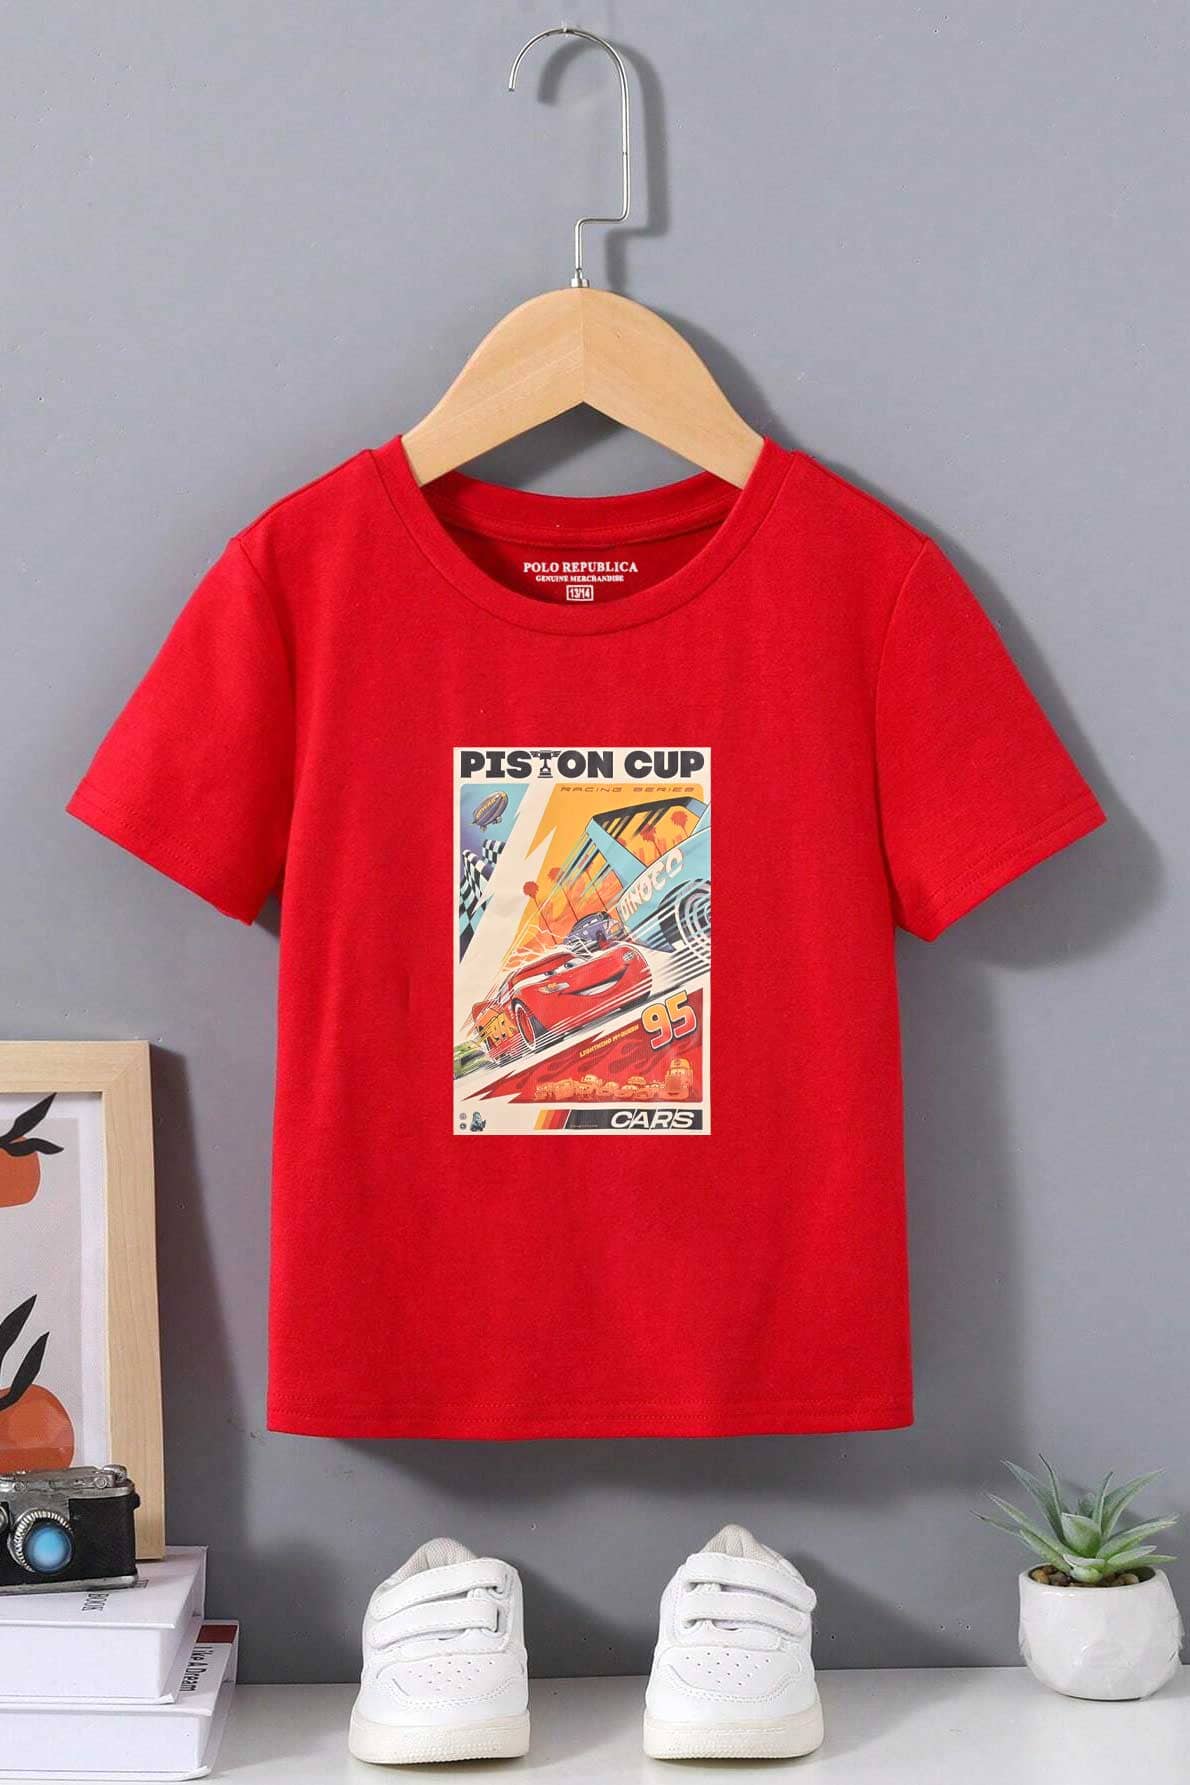 Polo Republica Boy's Piston Cup Printed Tee Shirt